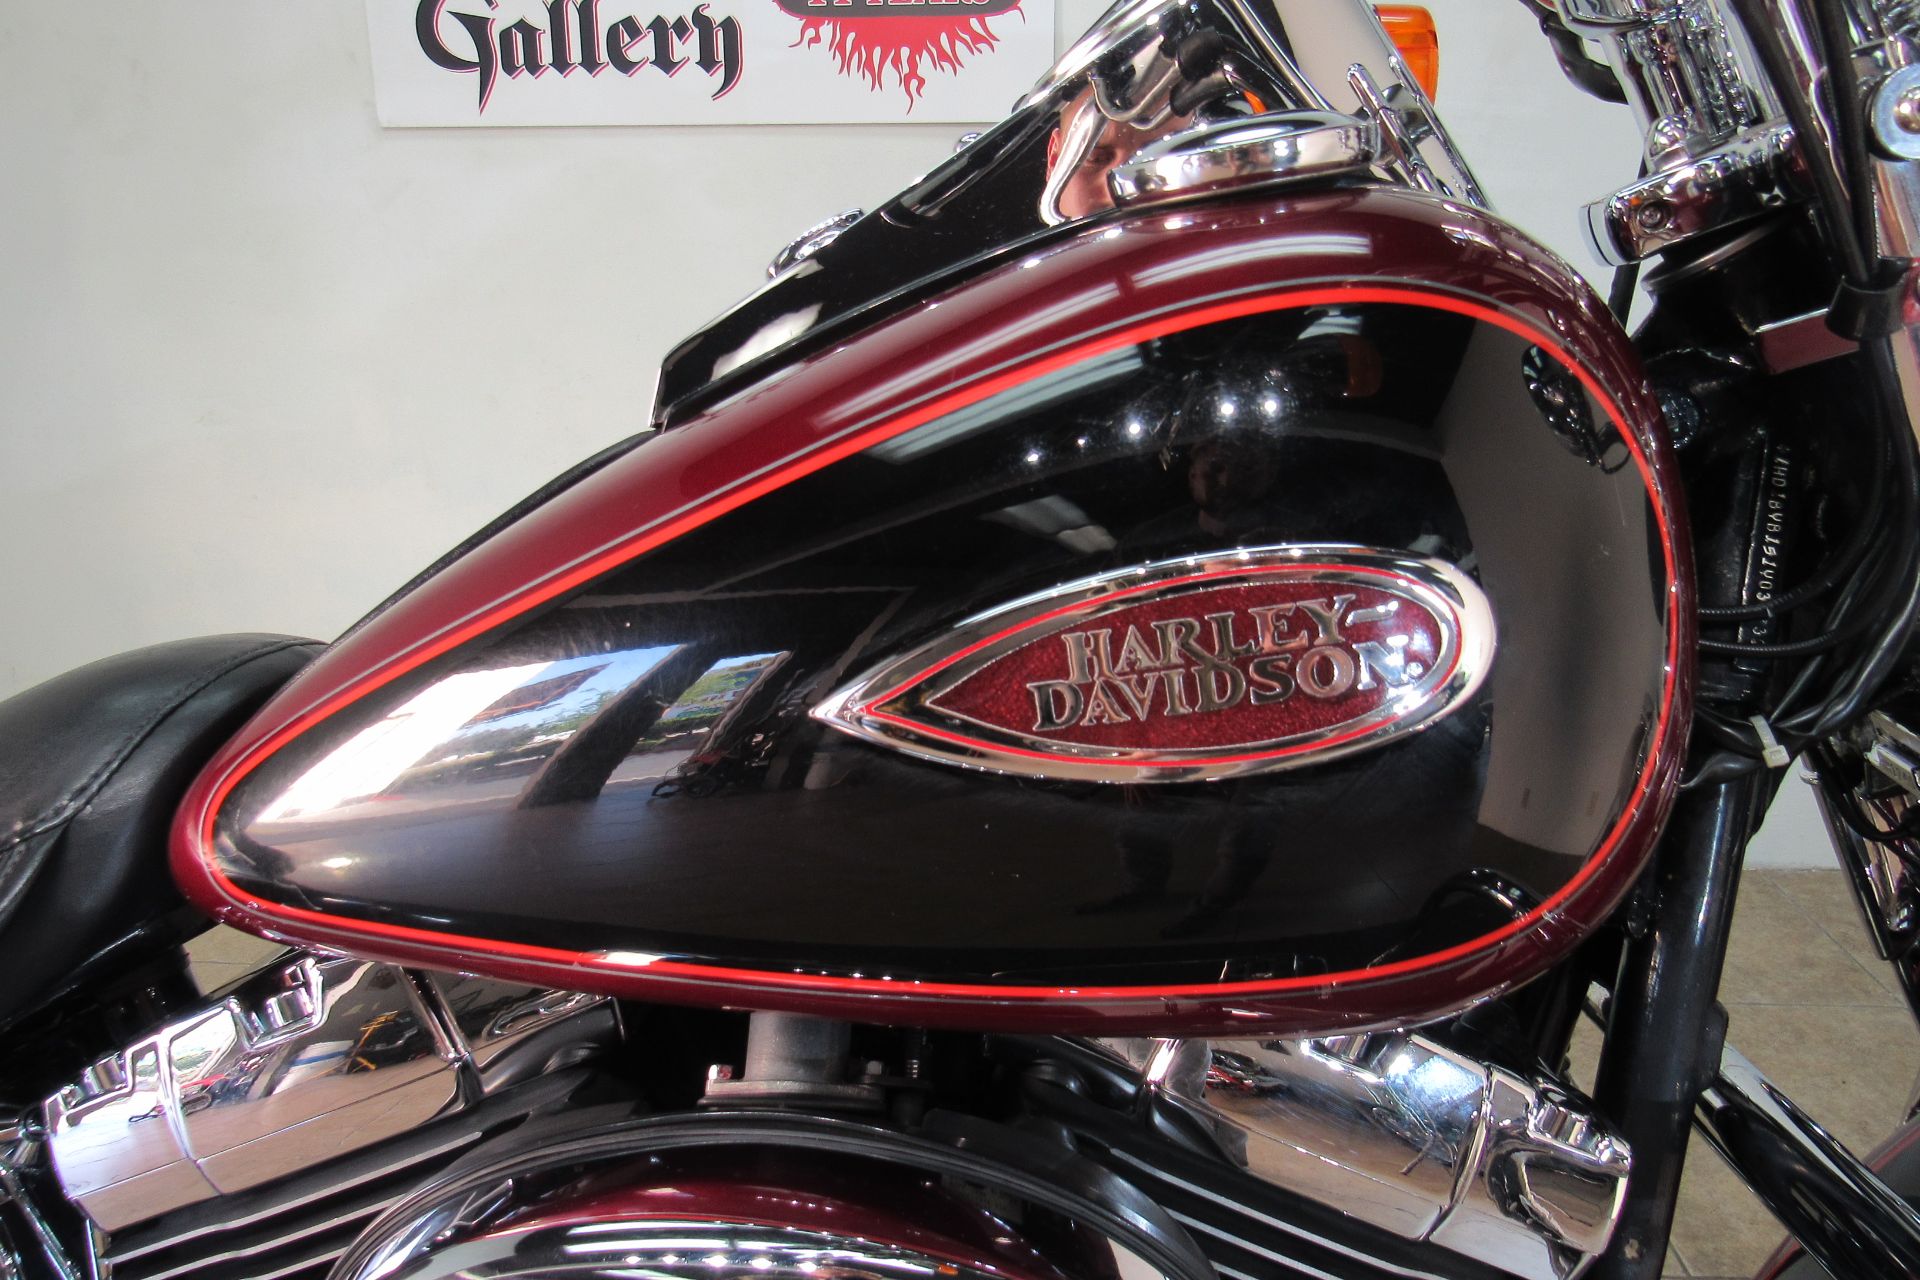 2001 Harley-Davidson Heritage Springer in Temecula, California - Photo 7